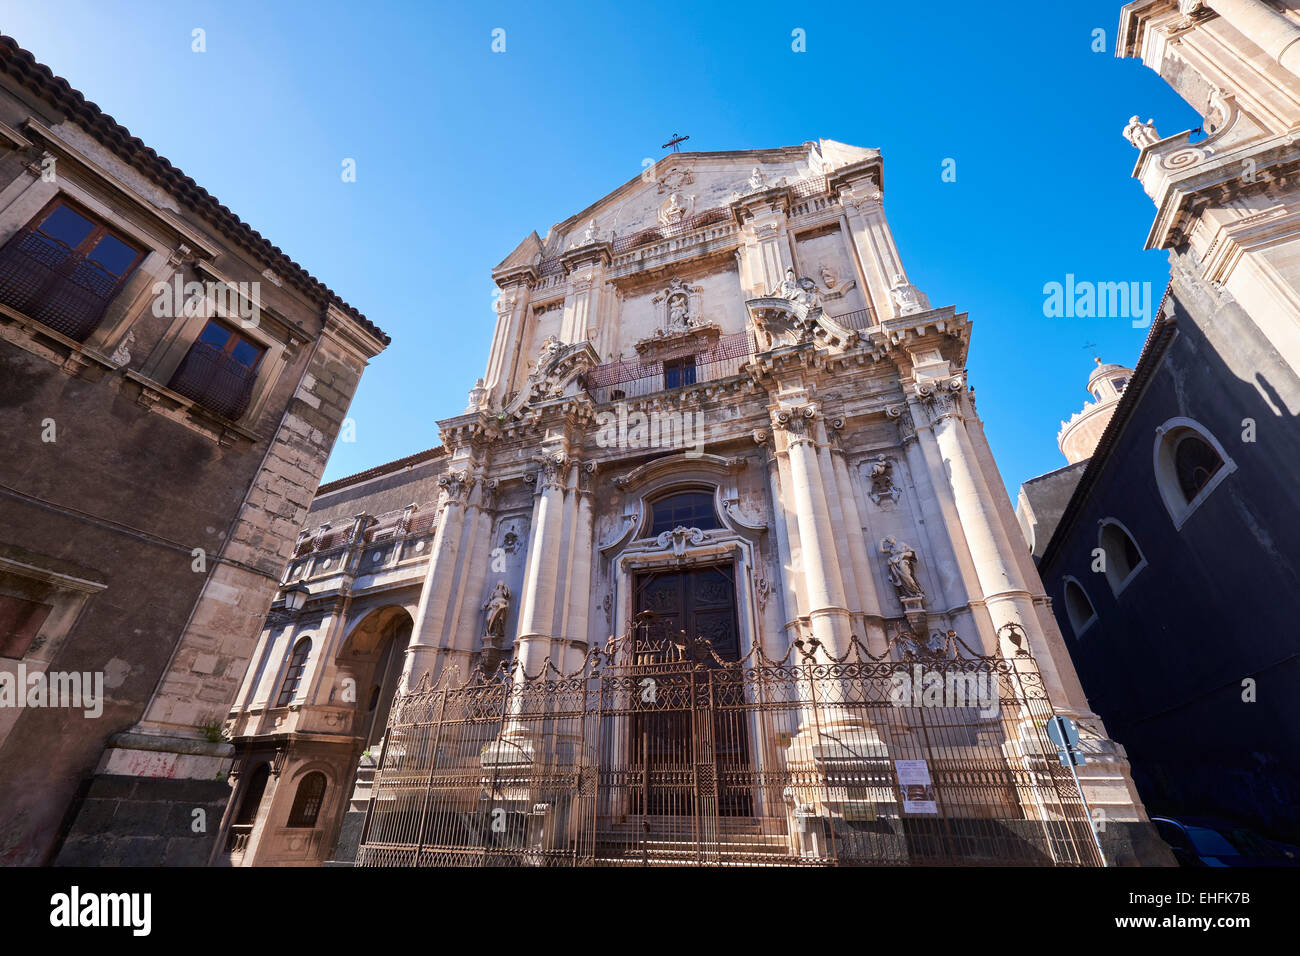 San Benedetto religiöse Architektur in Catania, Sizilien, Italien. Italienischen Tourismus, Reise- und Urlaubsziel. Stockfoto